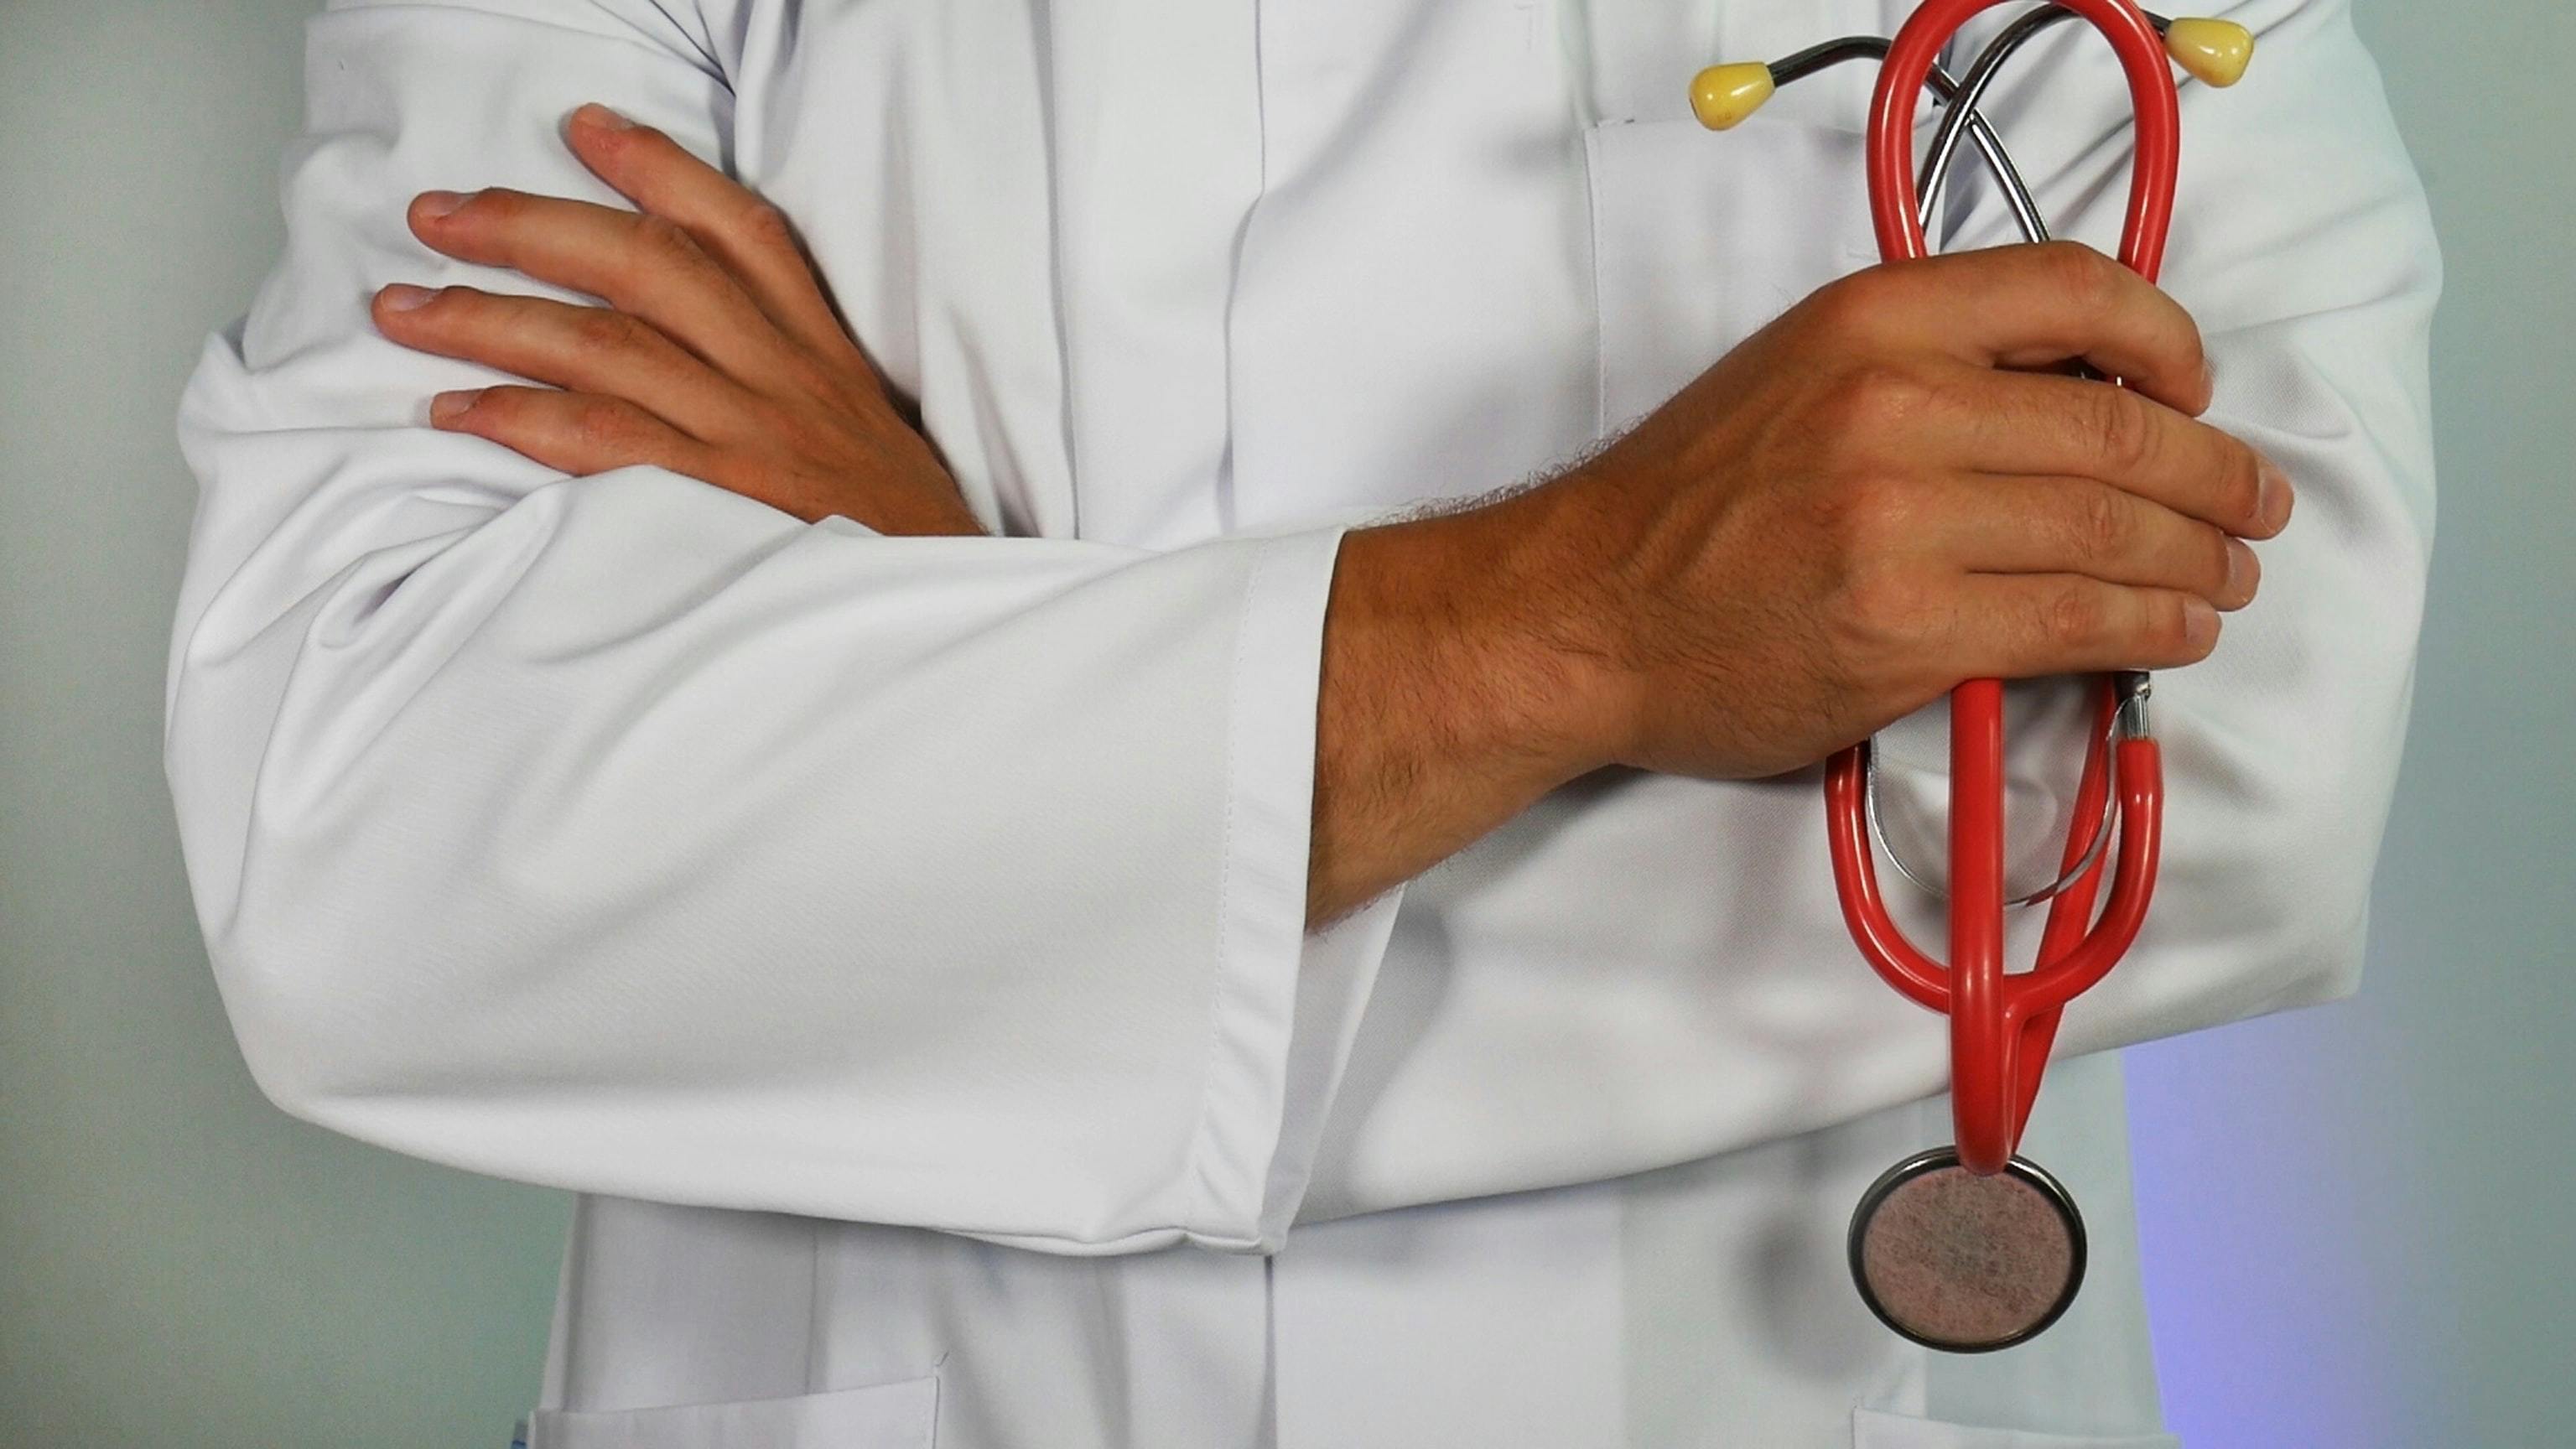 Halbnah zeigt das Bild die verschränkten Arme eines Arztes in weißem Kittel mit rot-gelbem Stethoskop in einer Hand.